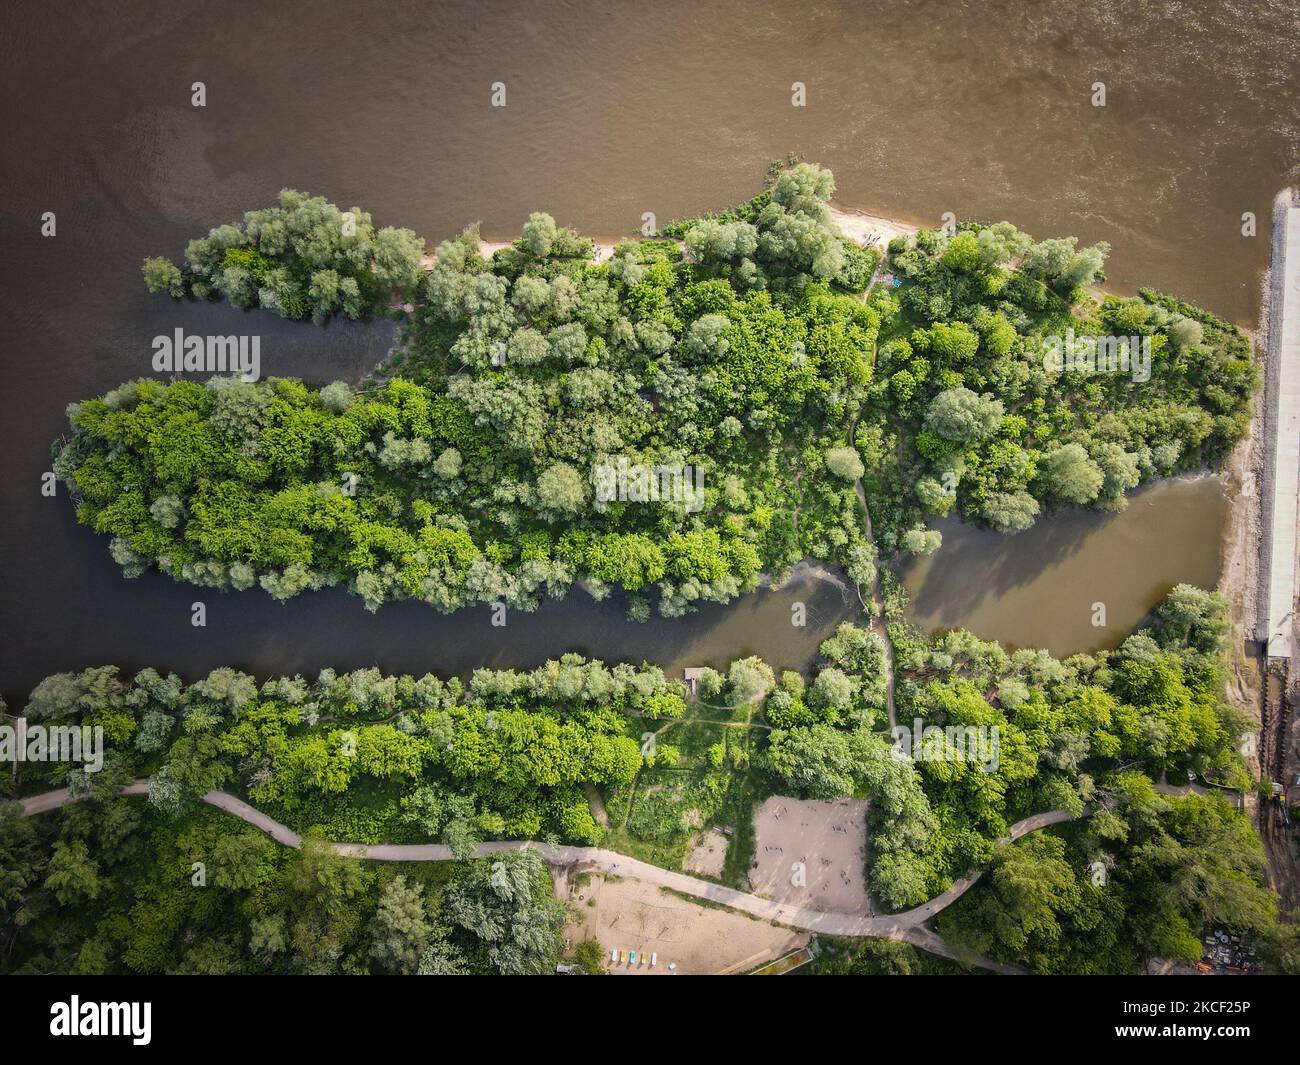 Una piccola isola nel fiume Vistola è vista a Varsavia, Polonia il 21 maggio 2021. Nel 2017 la Commissione europea ha dichiarato il 21 maggio come la Giornata europea natura 2000 per celebrare il 25th° anniversario della direttiva UE sulle abitudini alimentari. Natura 2000 è una rete di aree naturali protette. La Valle della Vistola Centrale che attraversa Varsavia è una delle 5300 aree designate natura 2000 in Polonia ed è sede di molte specie diverse di uccelli, isole incontaminate e sponde del fiume. (Foto di Str/NurPhoto) Foto Stock